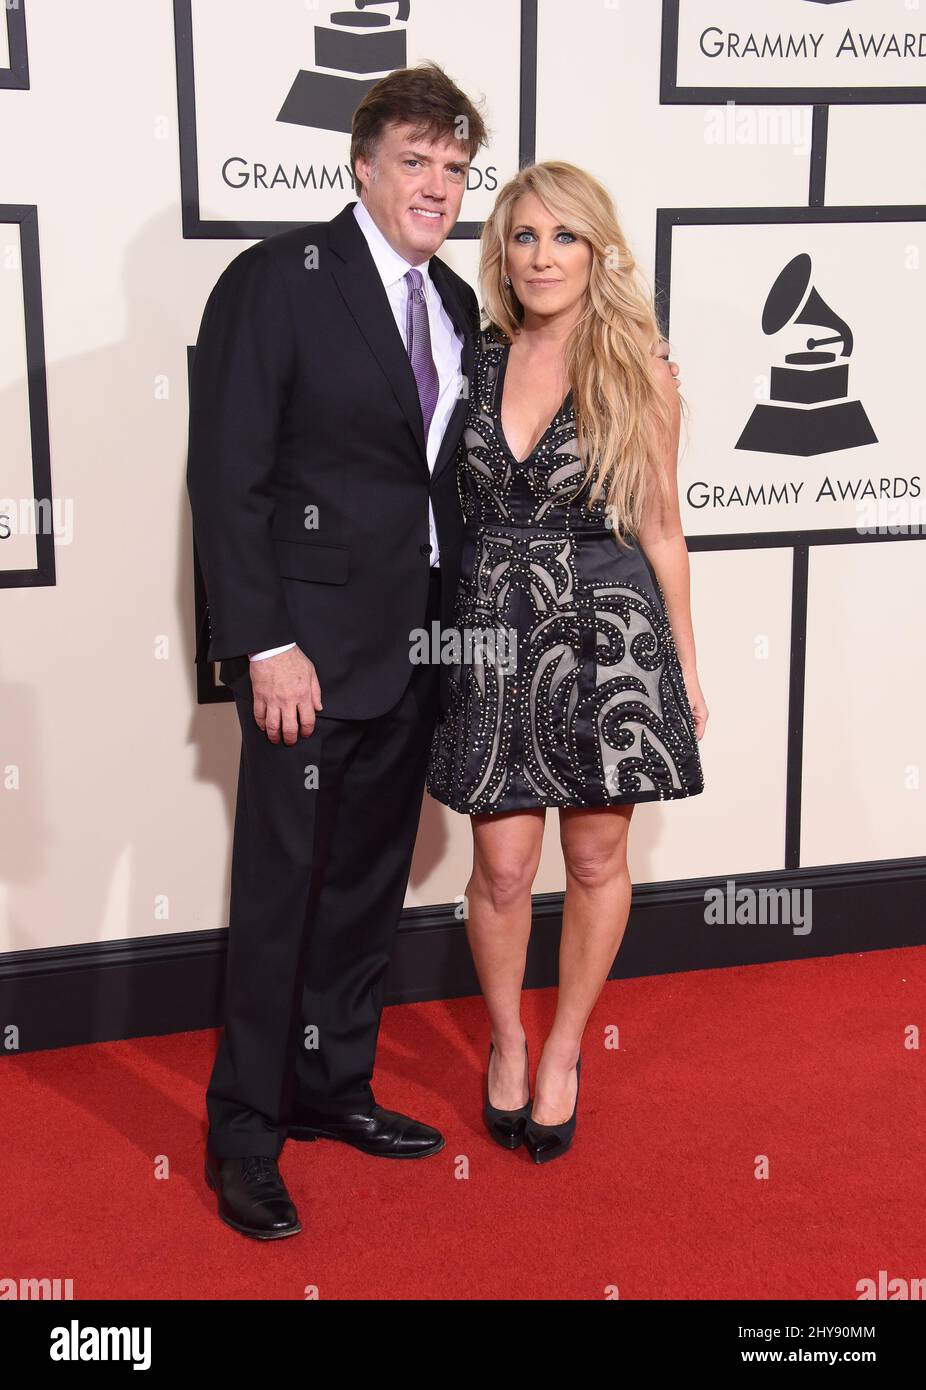 Lee Ann Womack, Frank Liddell arriva ai Grammy Awards 58th che si tengono allo Staples Center di Los Angeles Foto Stock